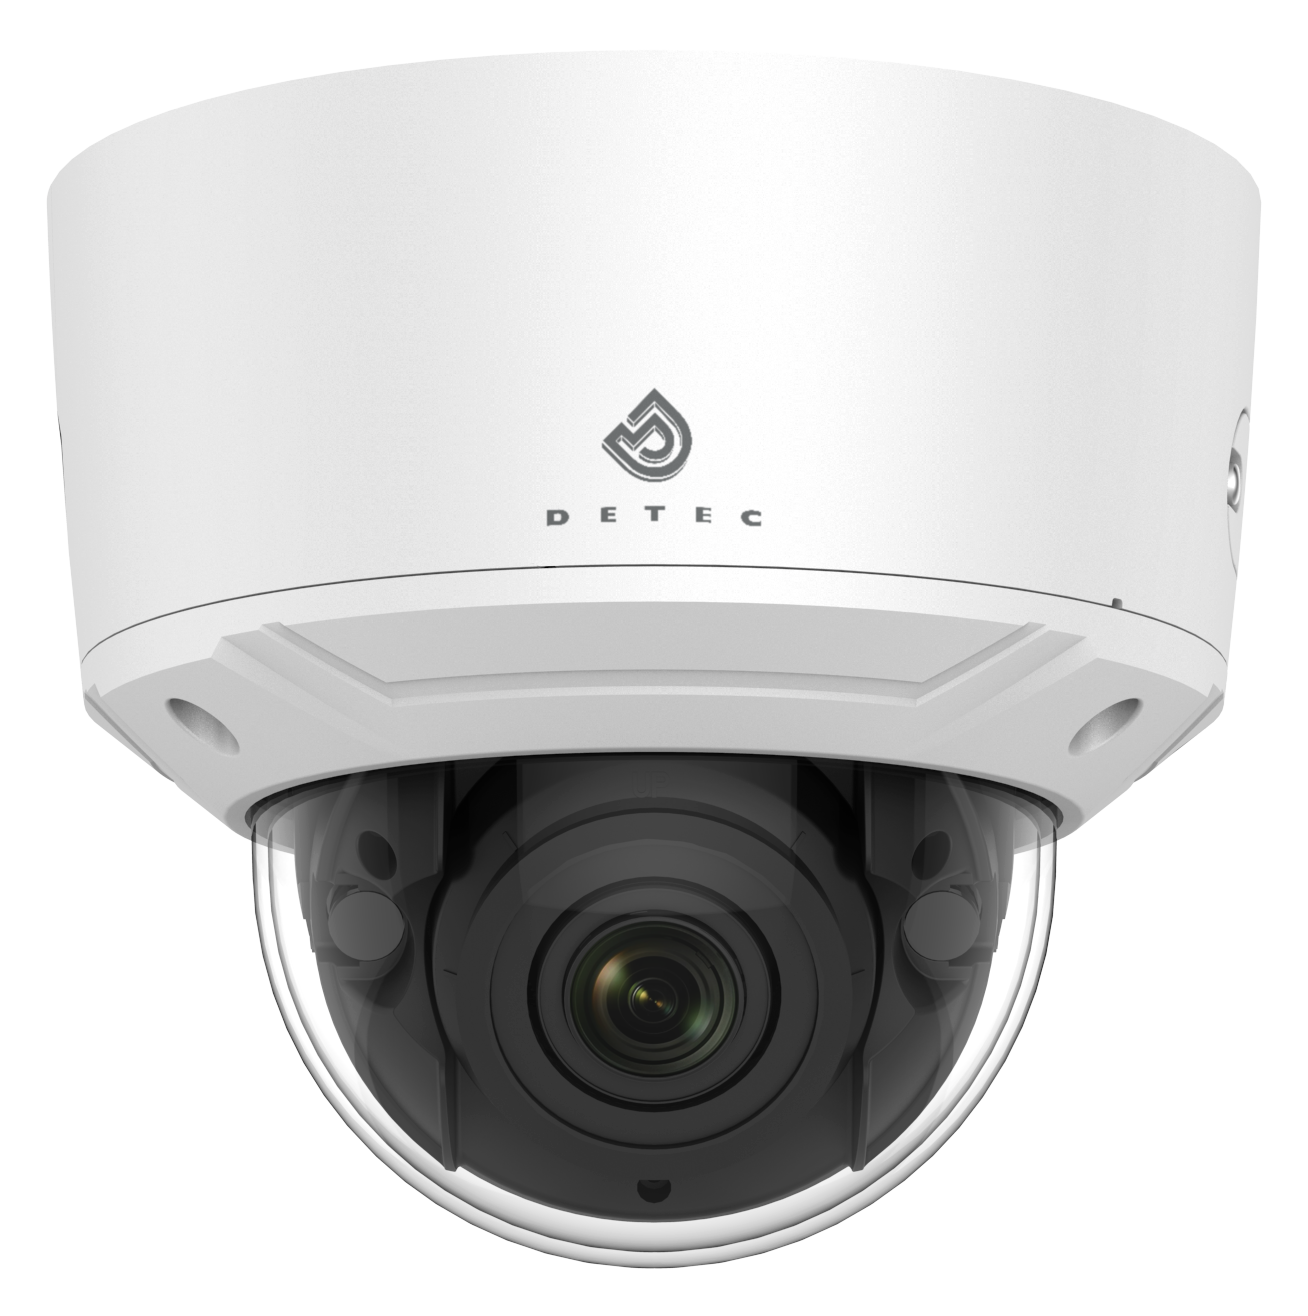 IP Minidome Cameras